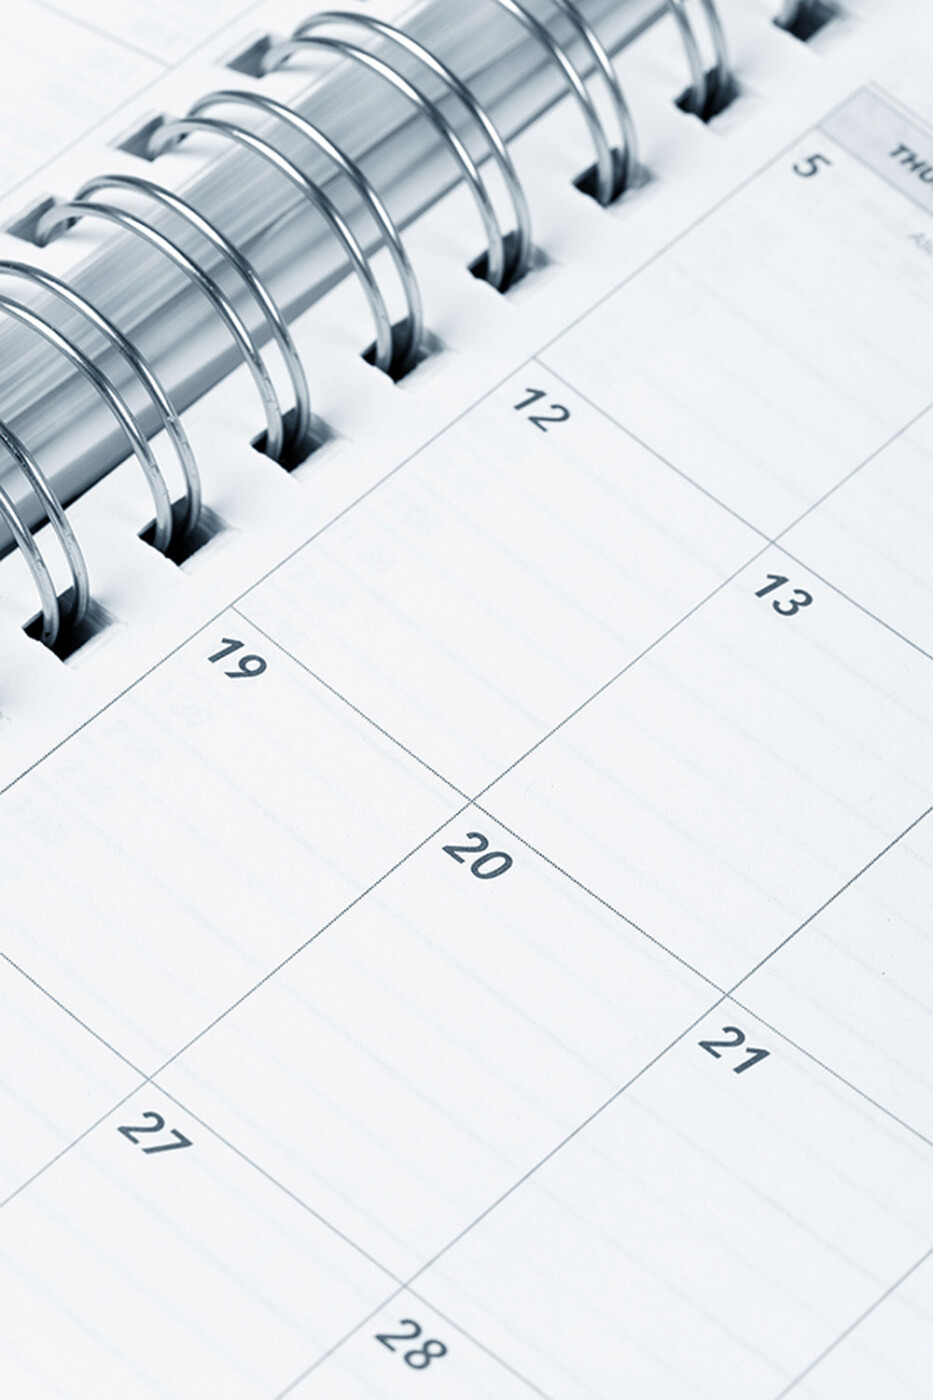 content planning calendar vertical